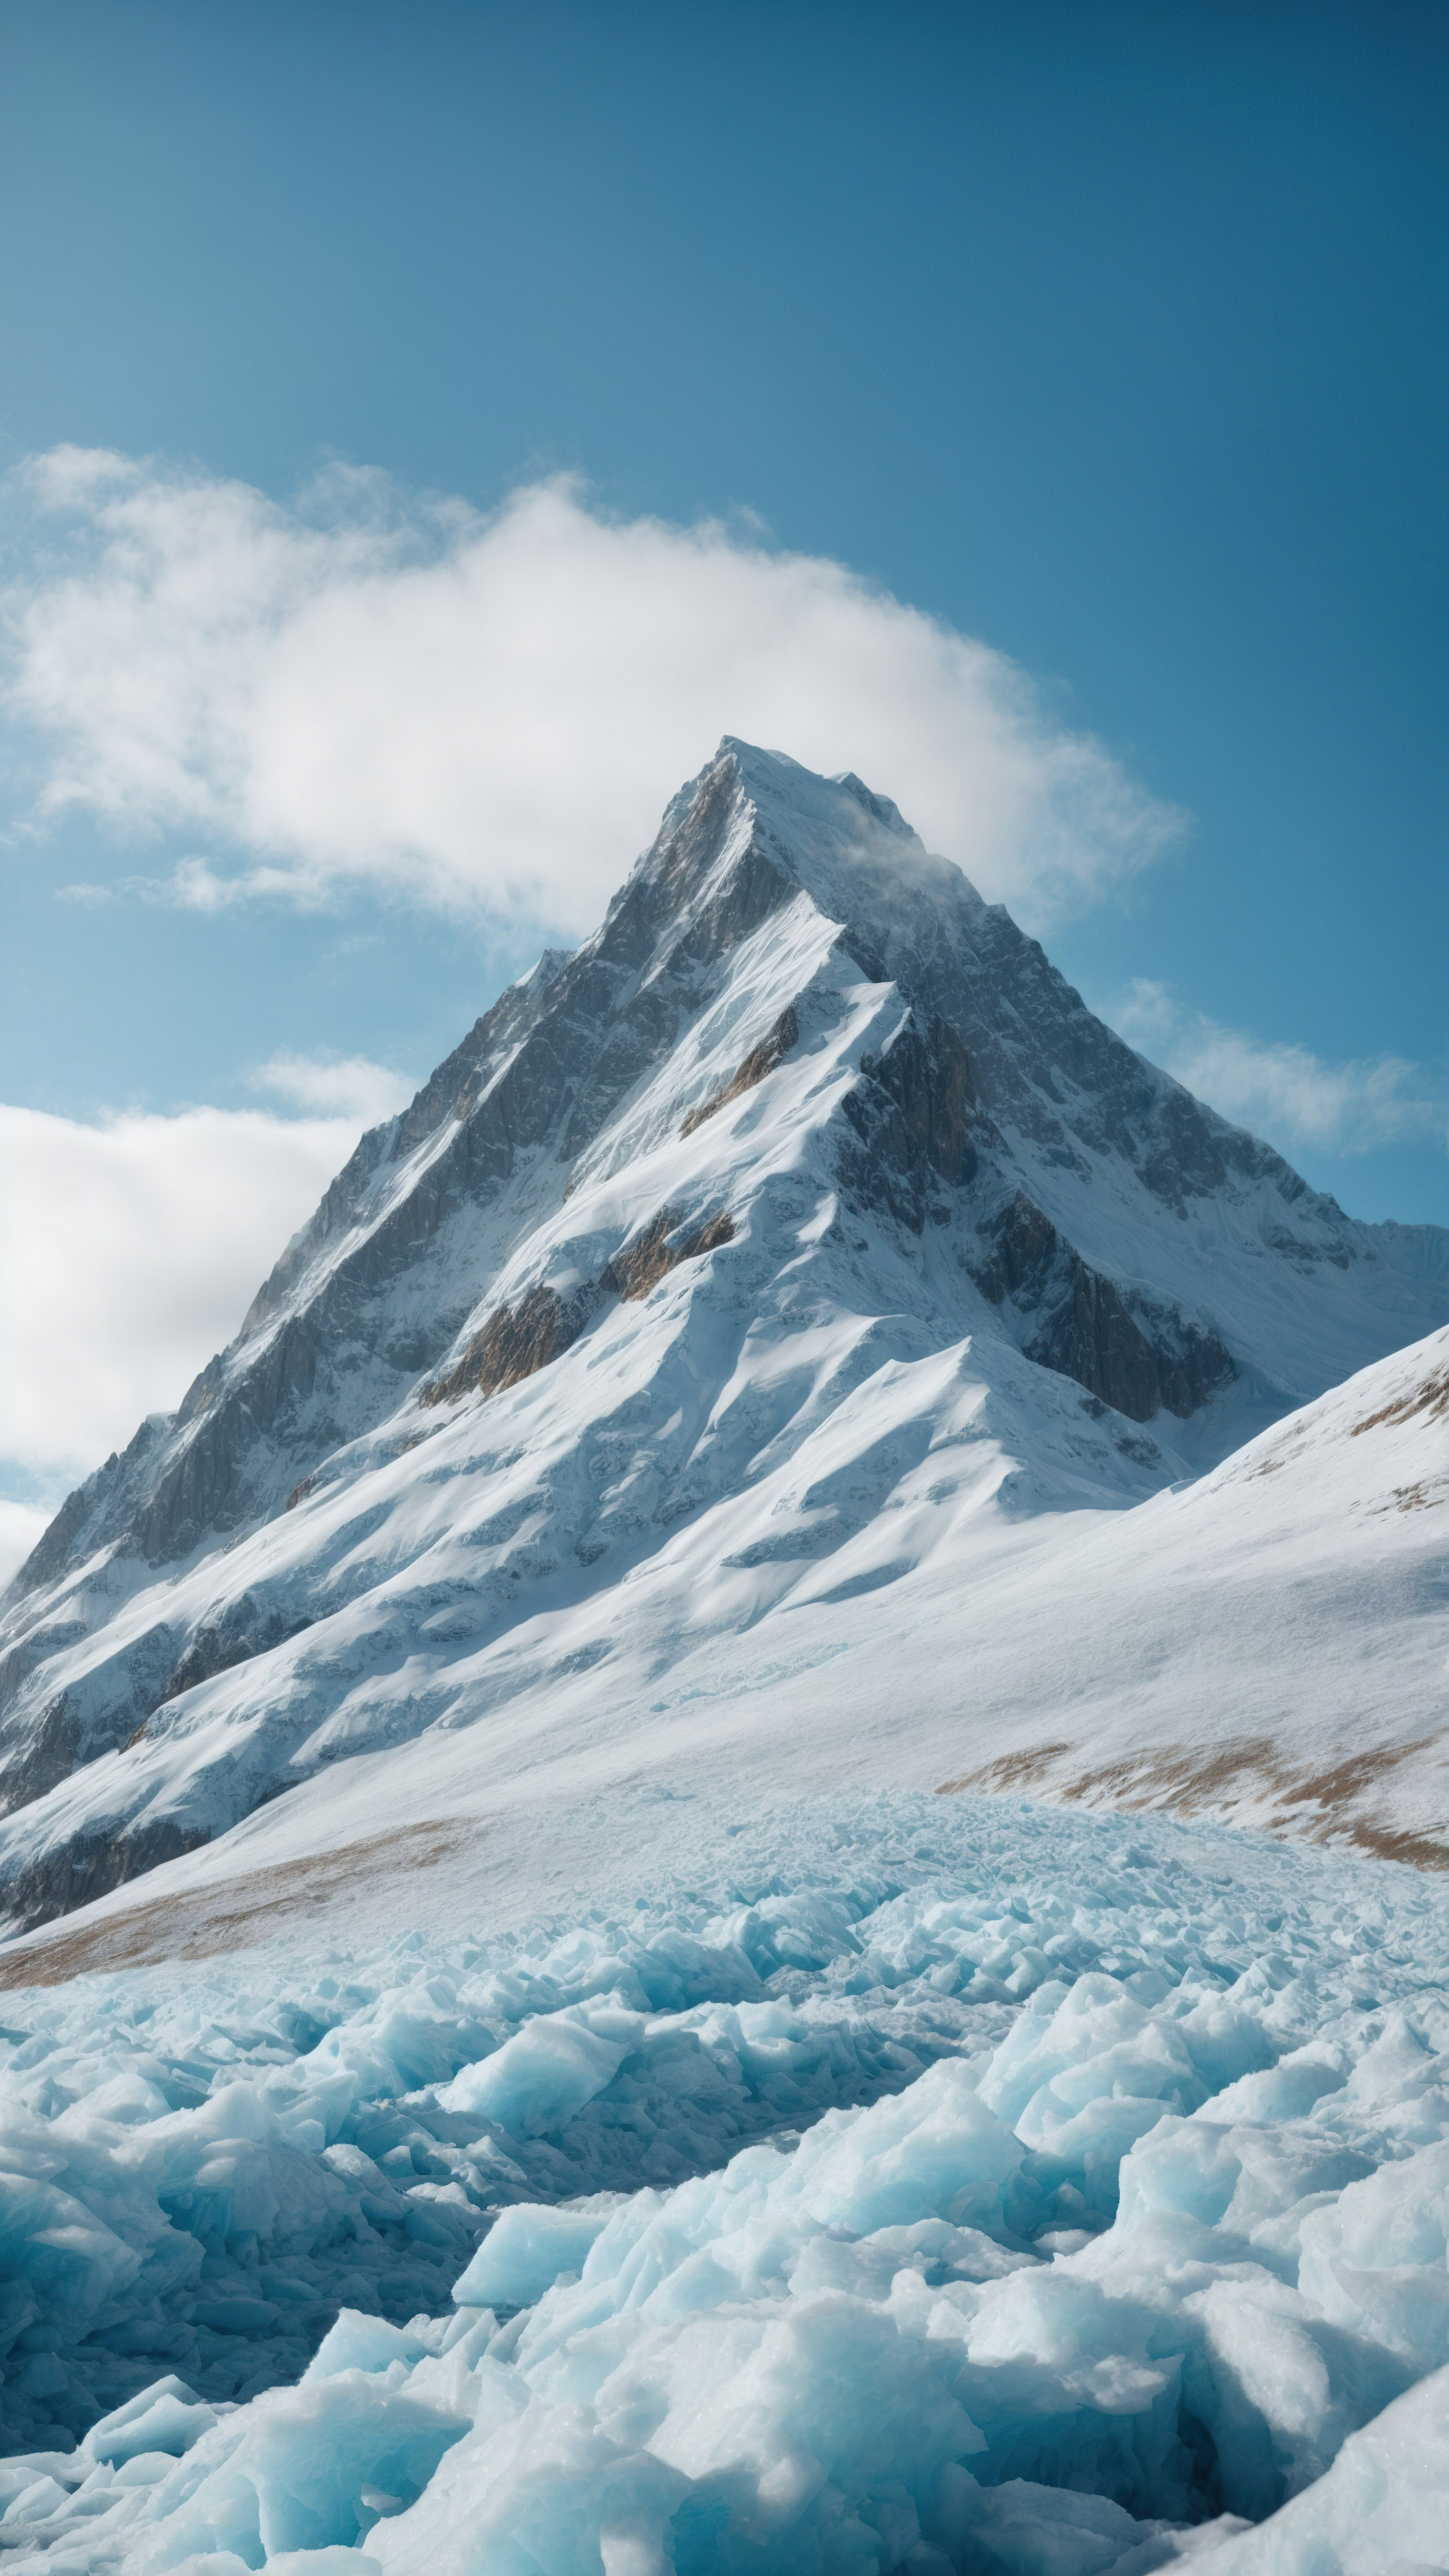 Vivez le froid d'un sommet de montagne couvert de glace et de neige, sous un ciel bleu clair, avec notre fond d'écran de neige pour iPhone.